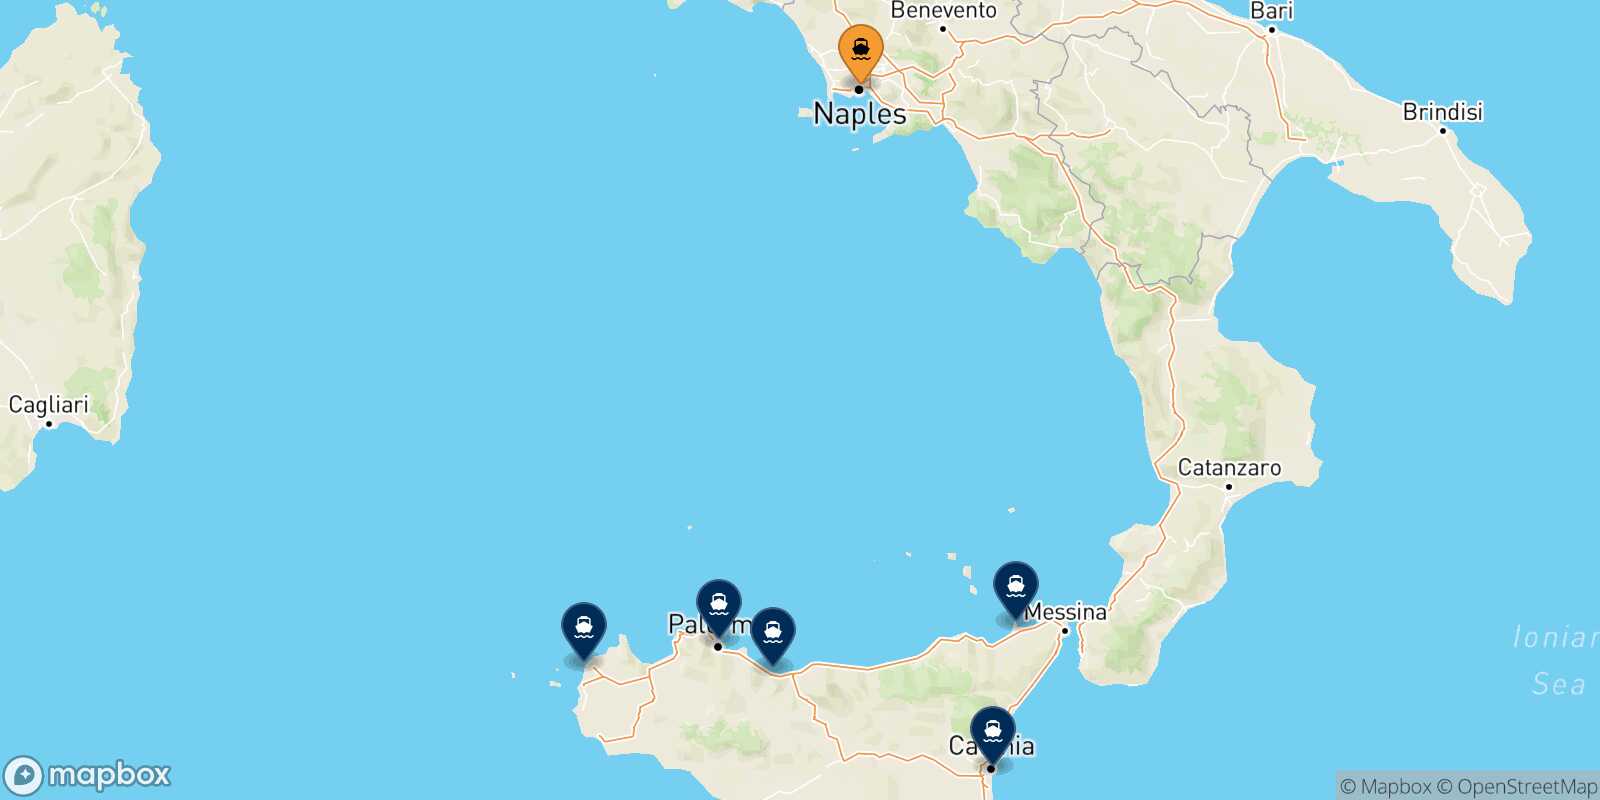 Mappa delle destinazioni raggiungibili da Napoli